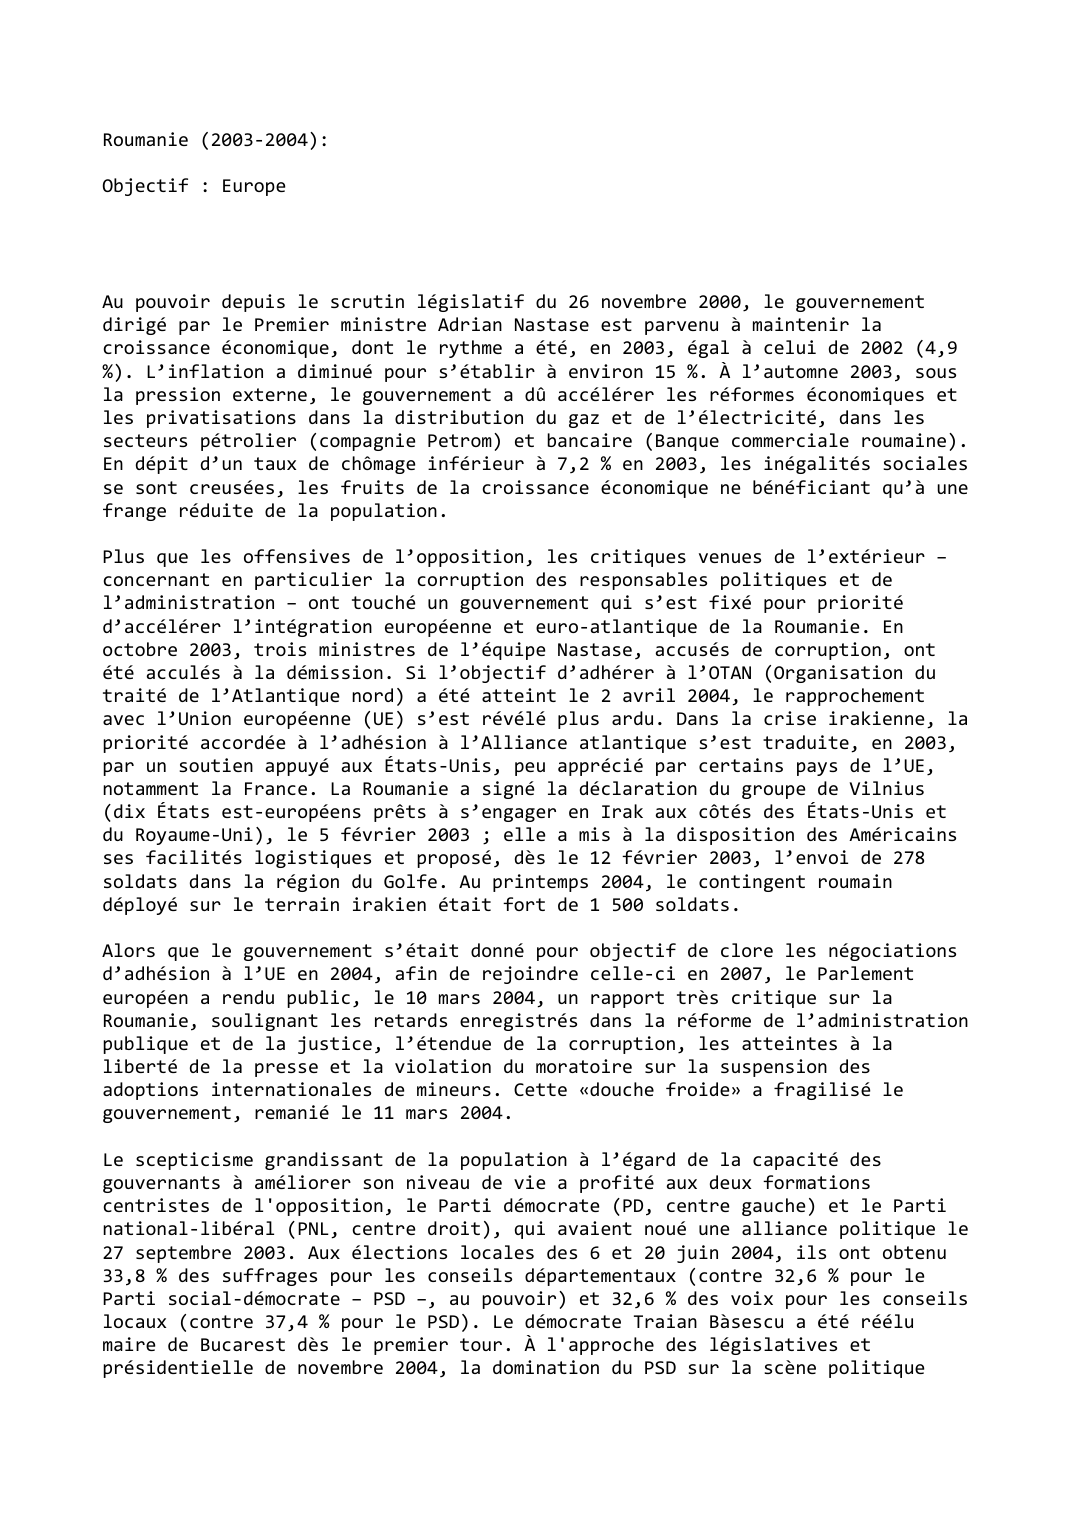 Prévisualisation du document Roumanie (2003-2004):

Objectif : Europe